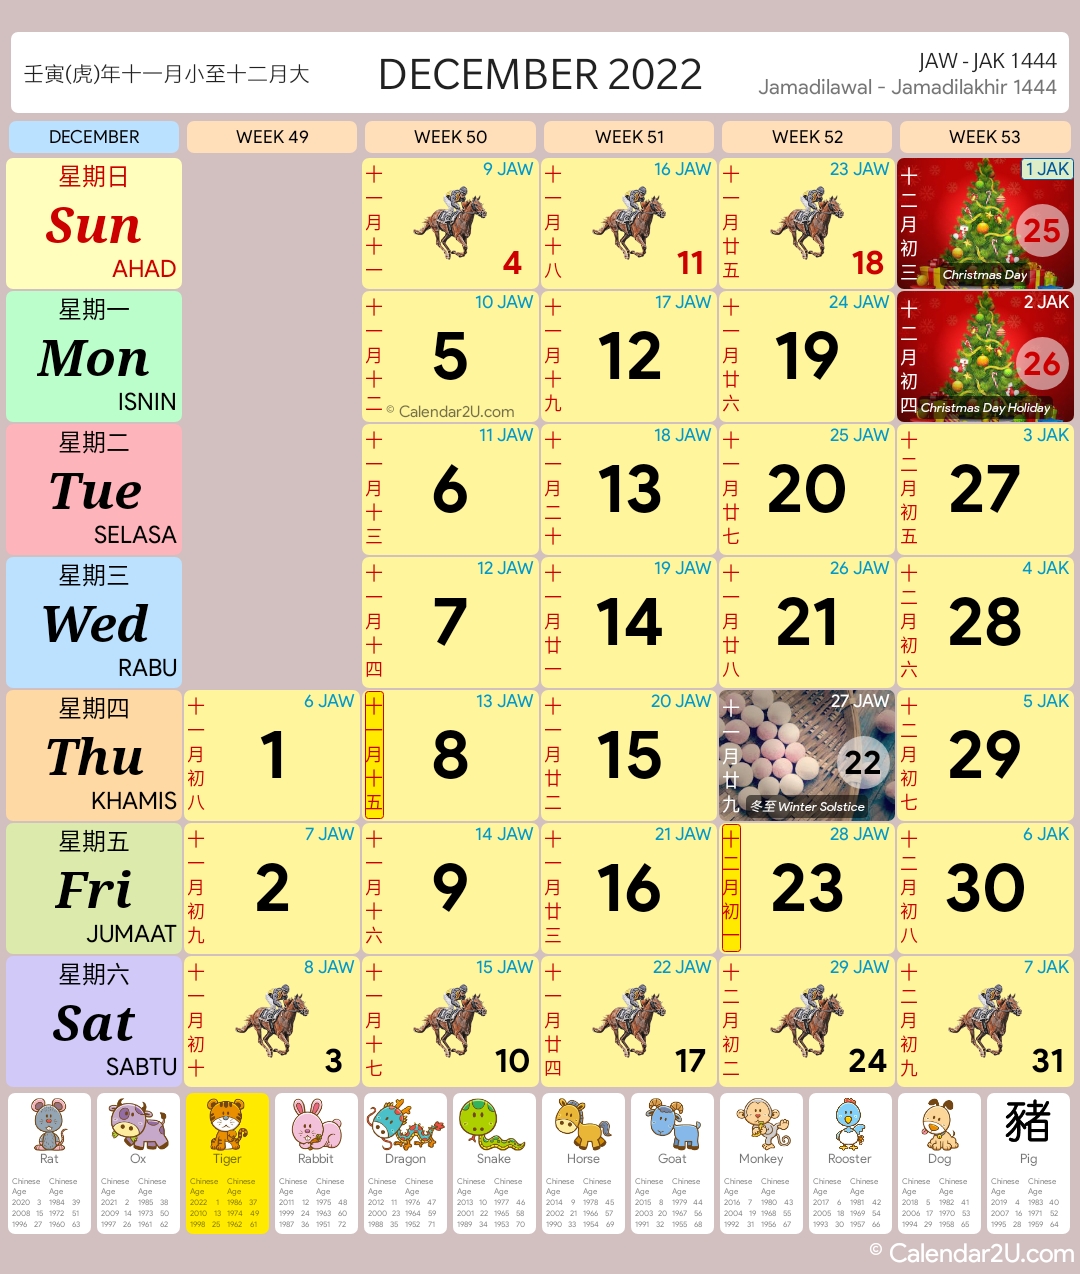 Singapore Calendar Dec 2022